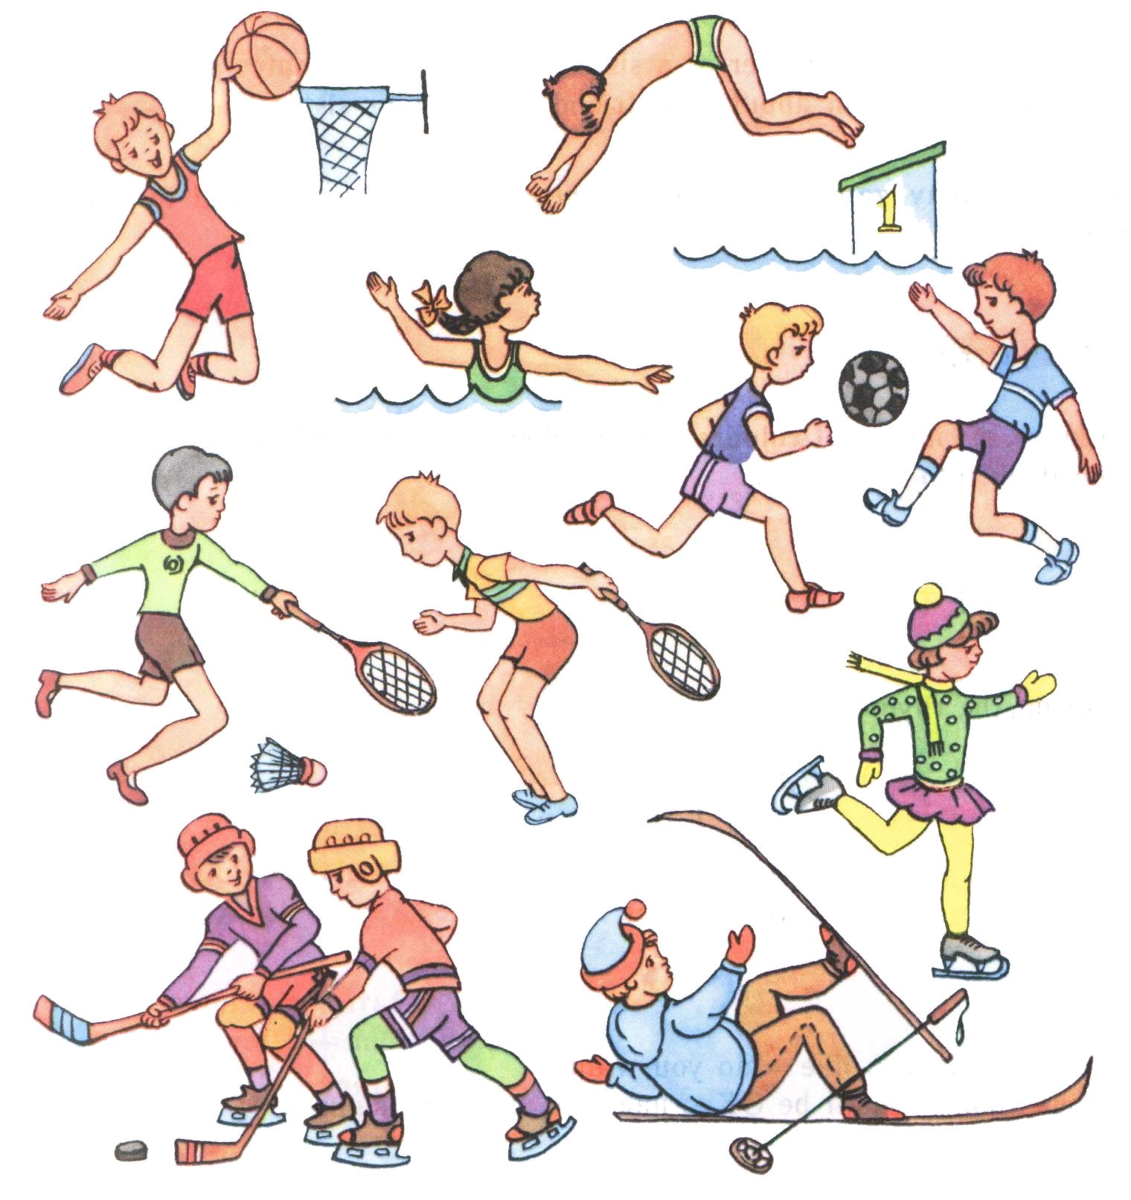 Занятие спортом рисунок. Физическая культура. Спортивные рисунки для детей. Занятие спортом картинки для детей. Урок спорт игры